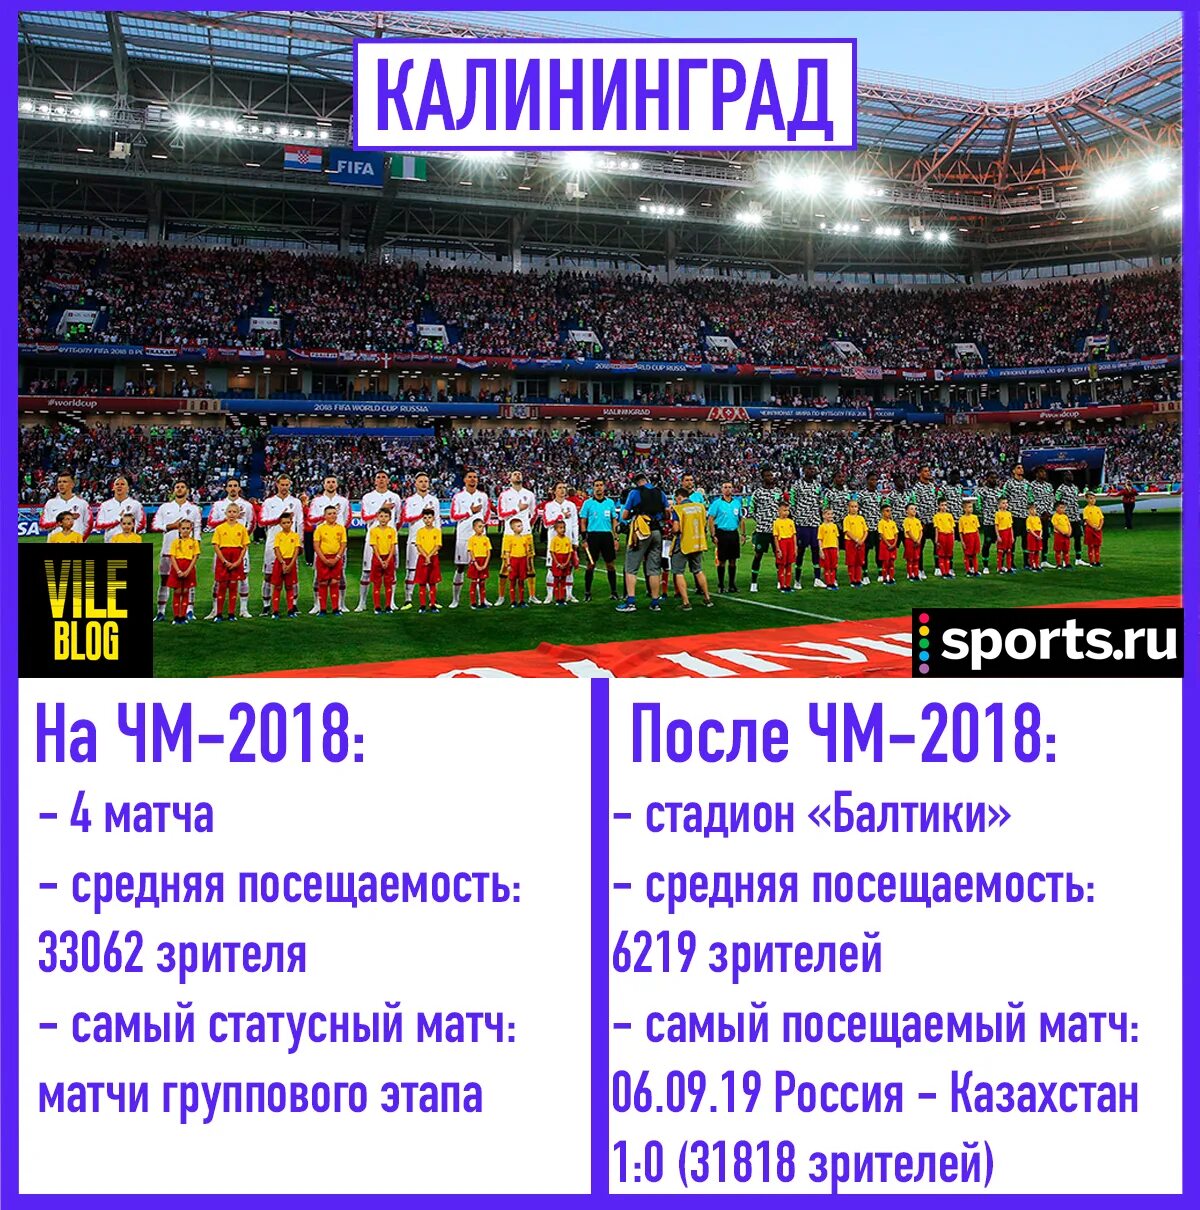 Калининград какие матчи. Стадионы принимающие ЧМ 2018. Калининград ЧМ 2018 какие матчи.